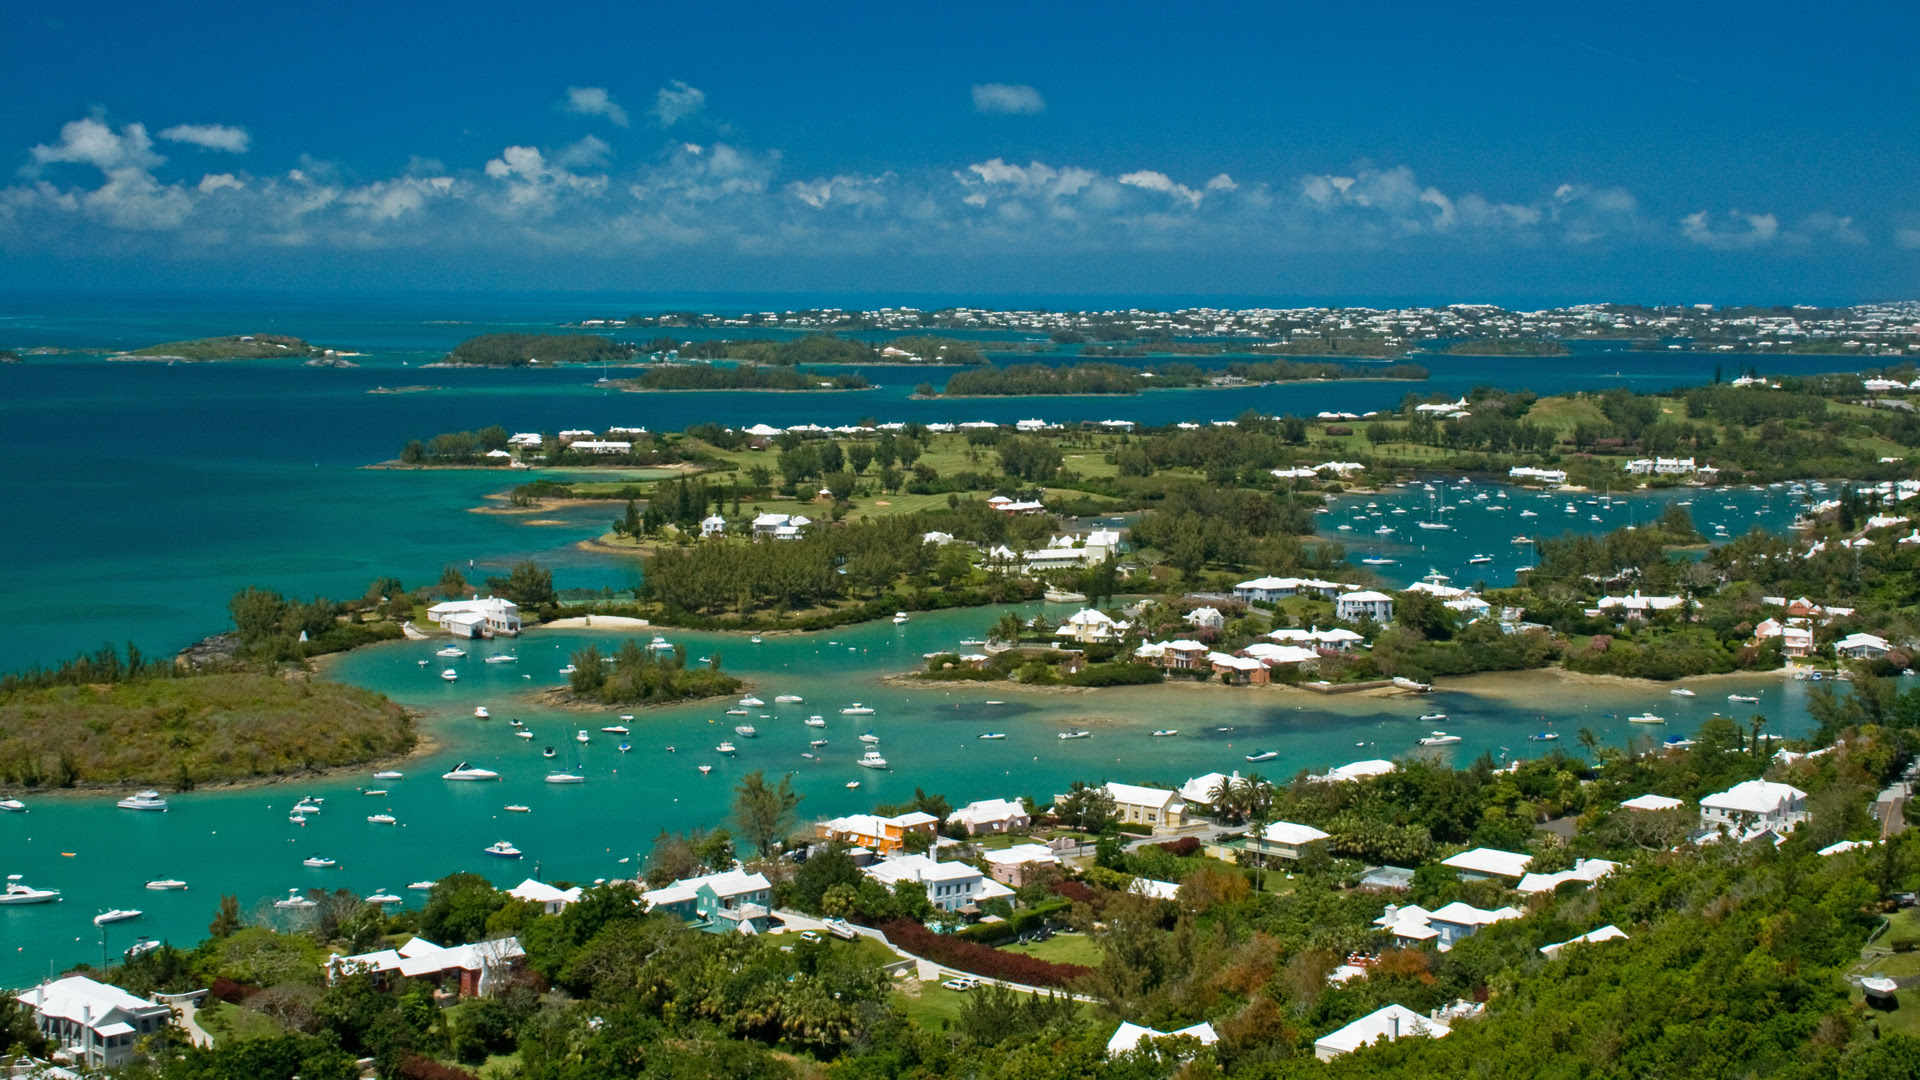 Bermudas es uno de los destinos más concurridos debido a que es un centro financiero offshore. (Istock)